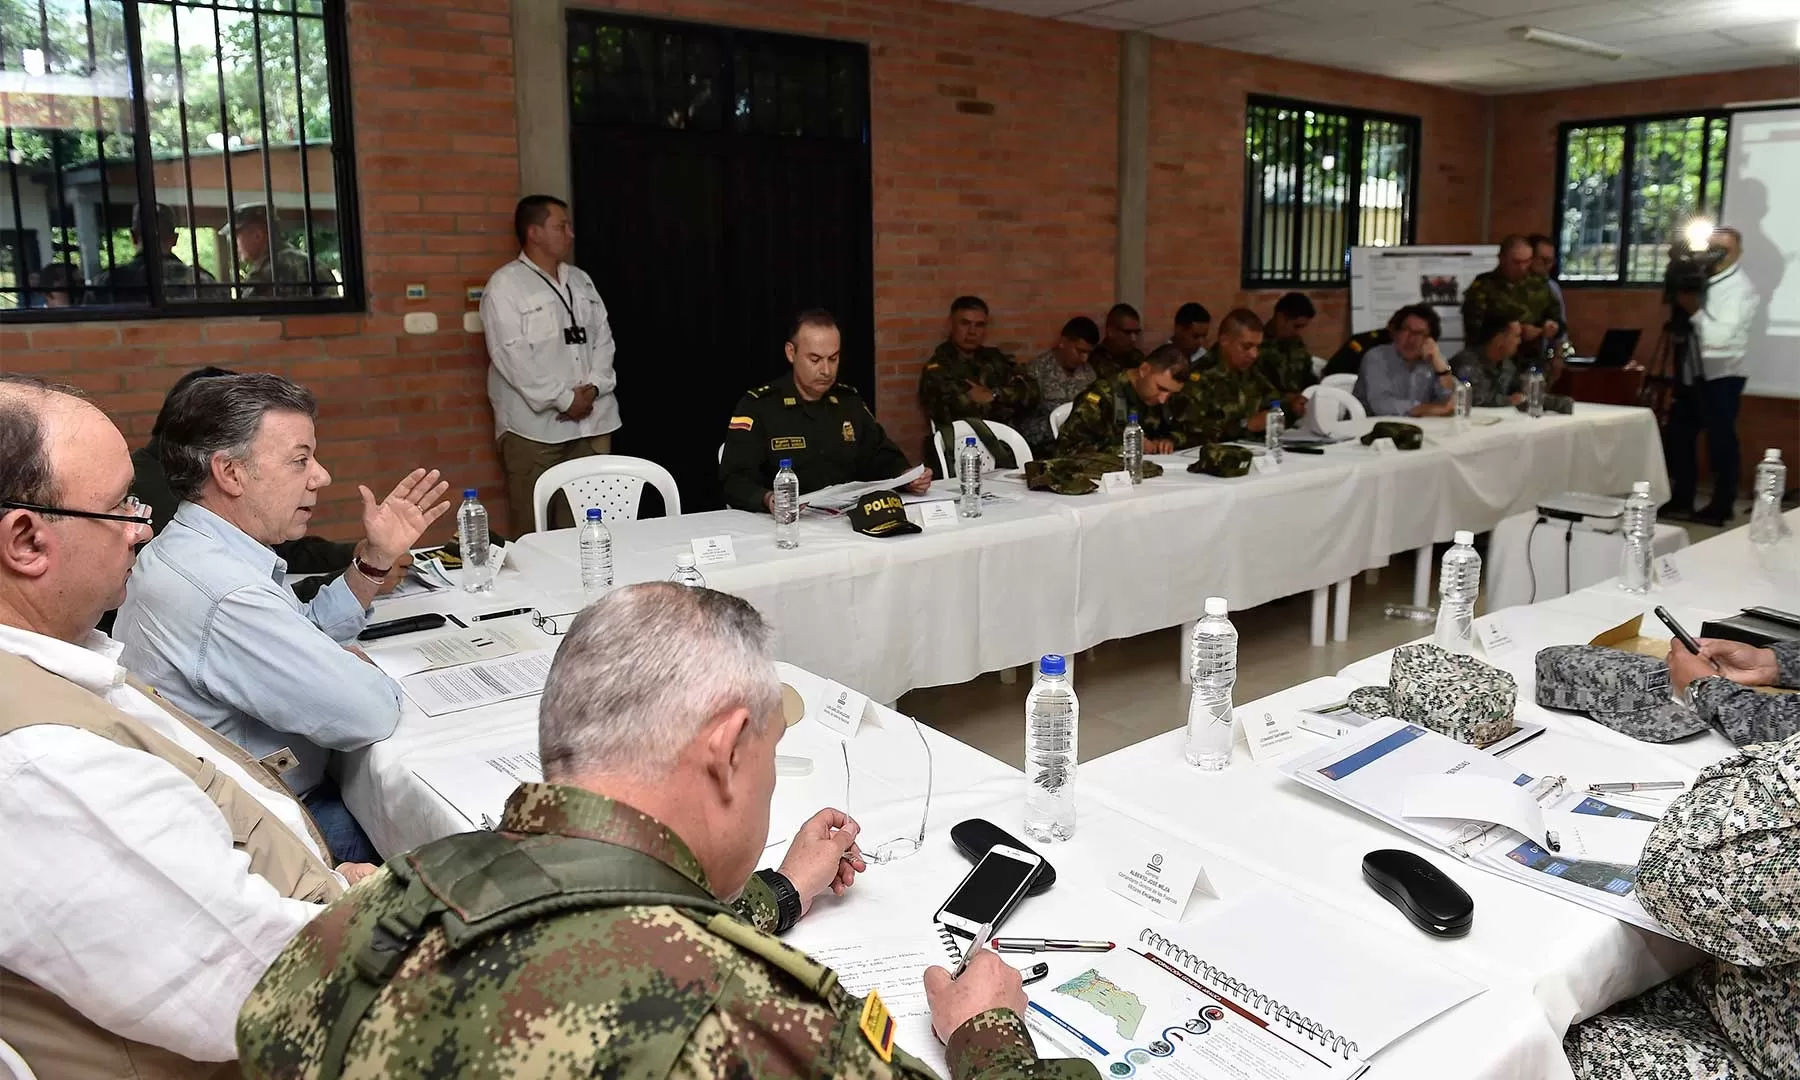 En Arauquita el Presidente Juan Manuel Santos lideró este jueves un Consejo de Seguridad, le acompaña el Ministro de Defensa, Luis Carlos Villegas. Foto: César Carrión - SIG.